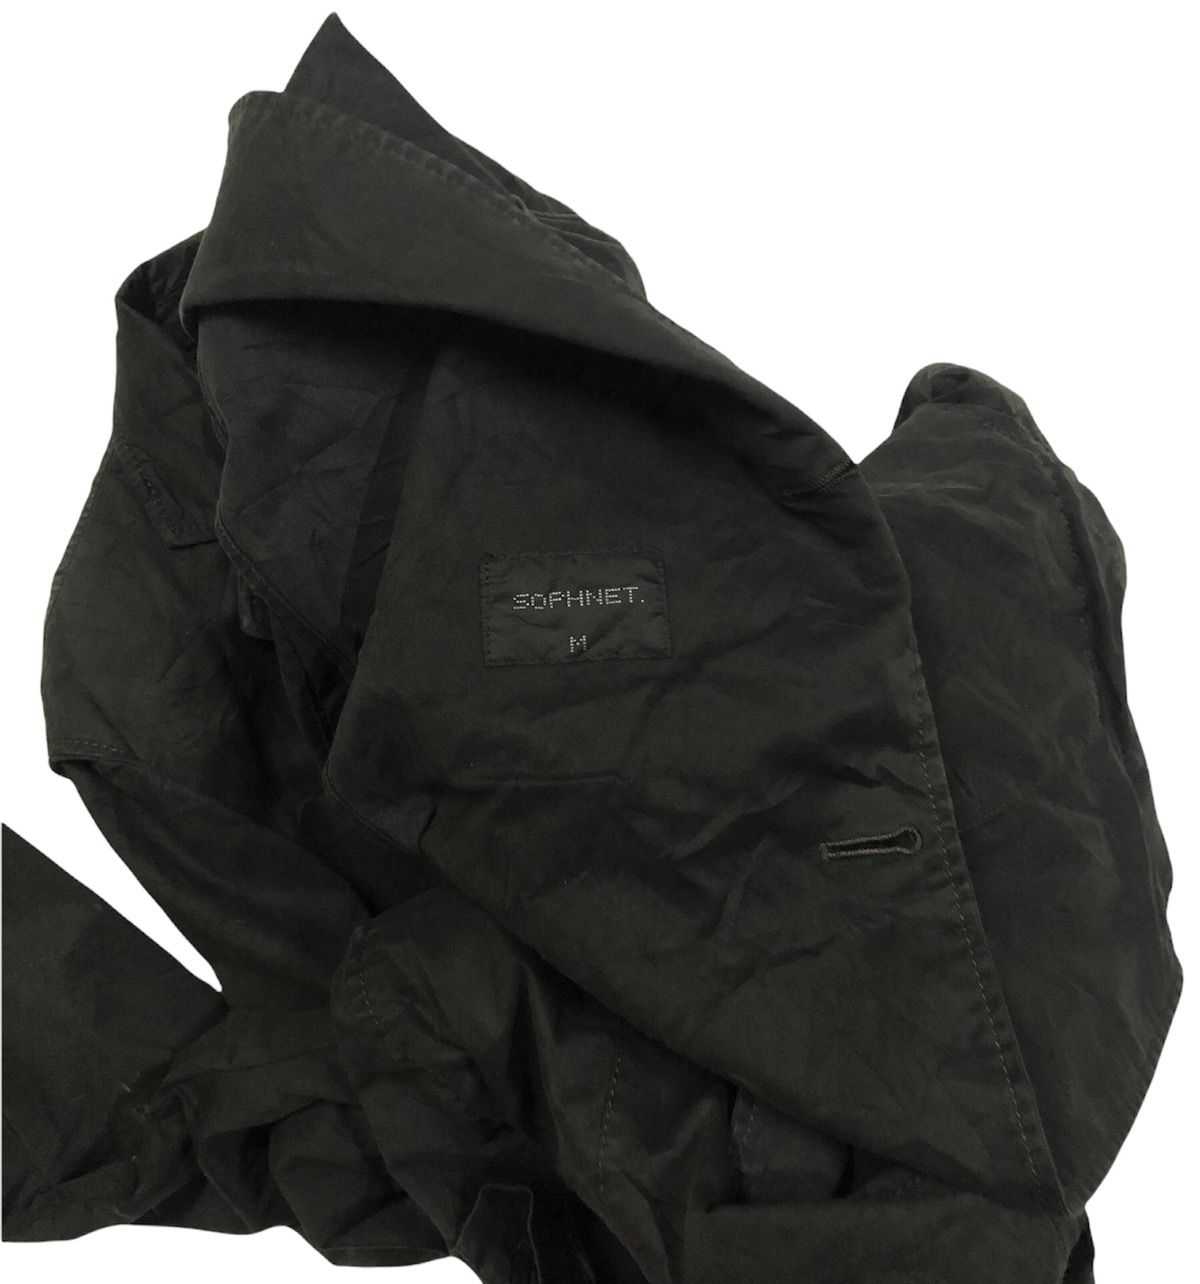 💣Japanese sophnet jacket - 4